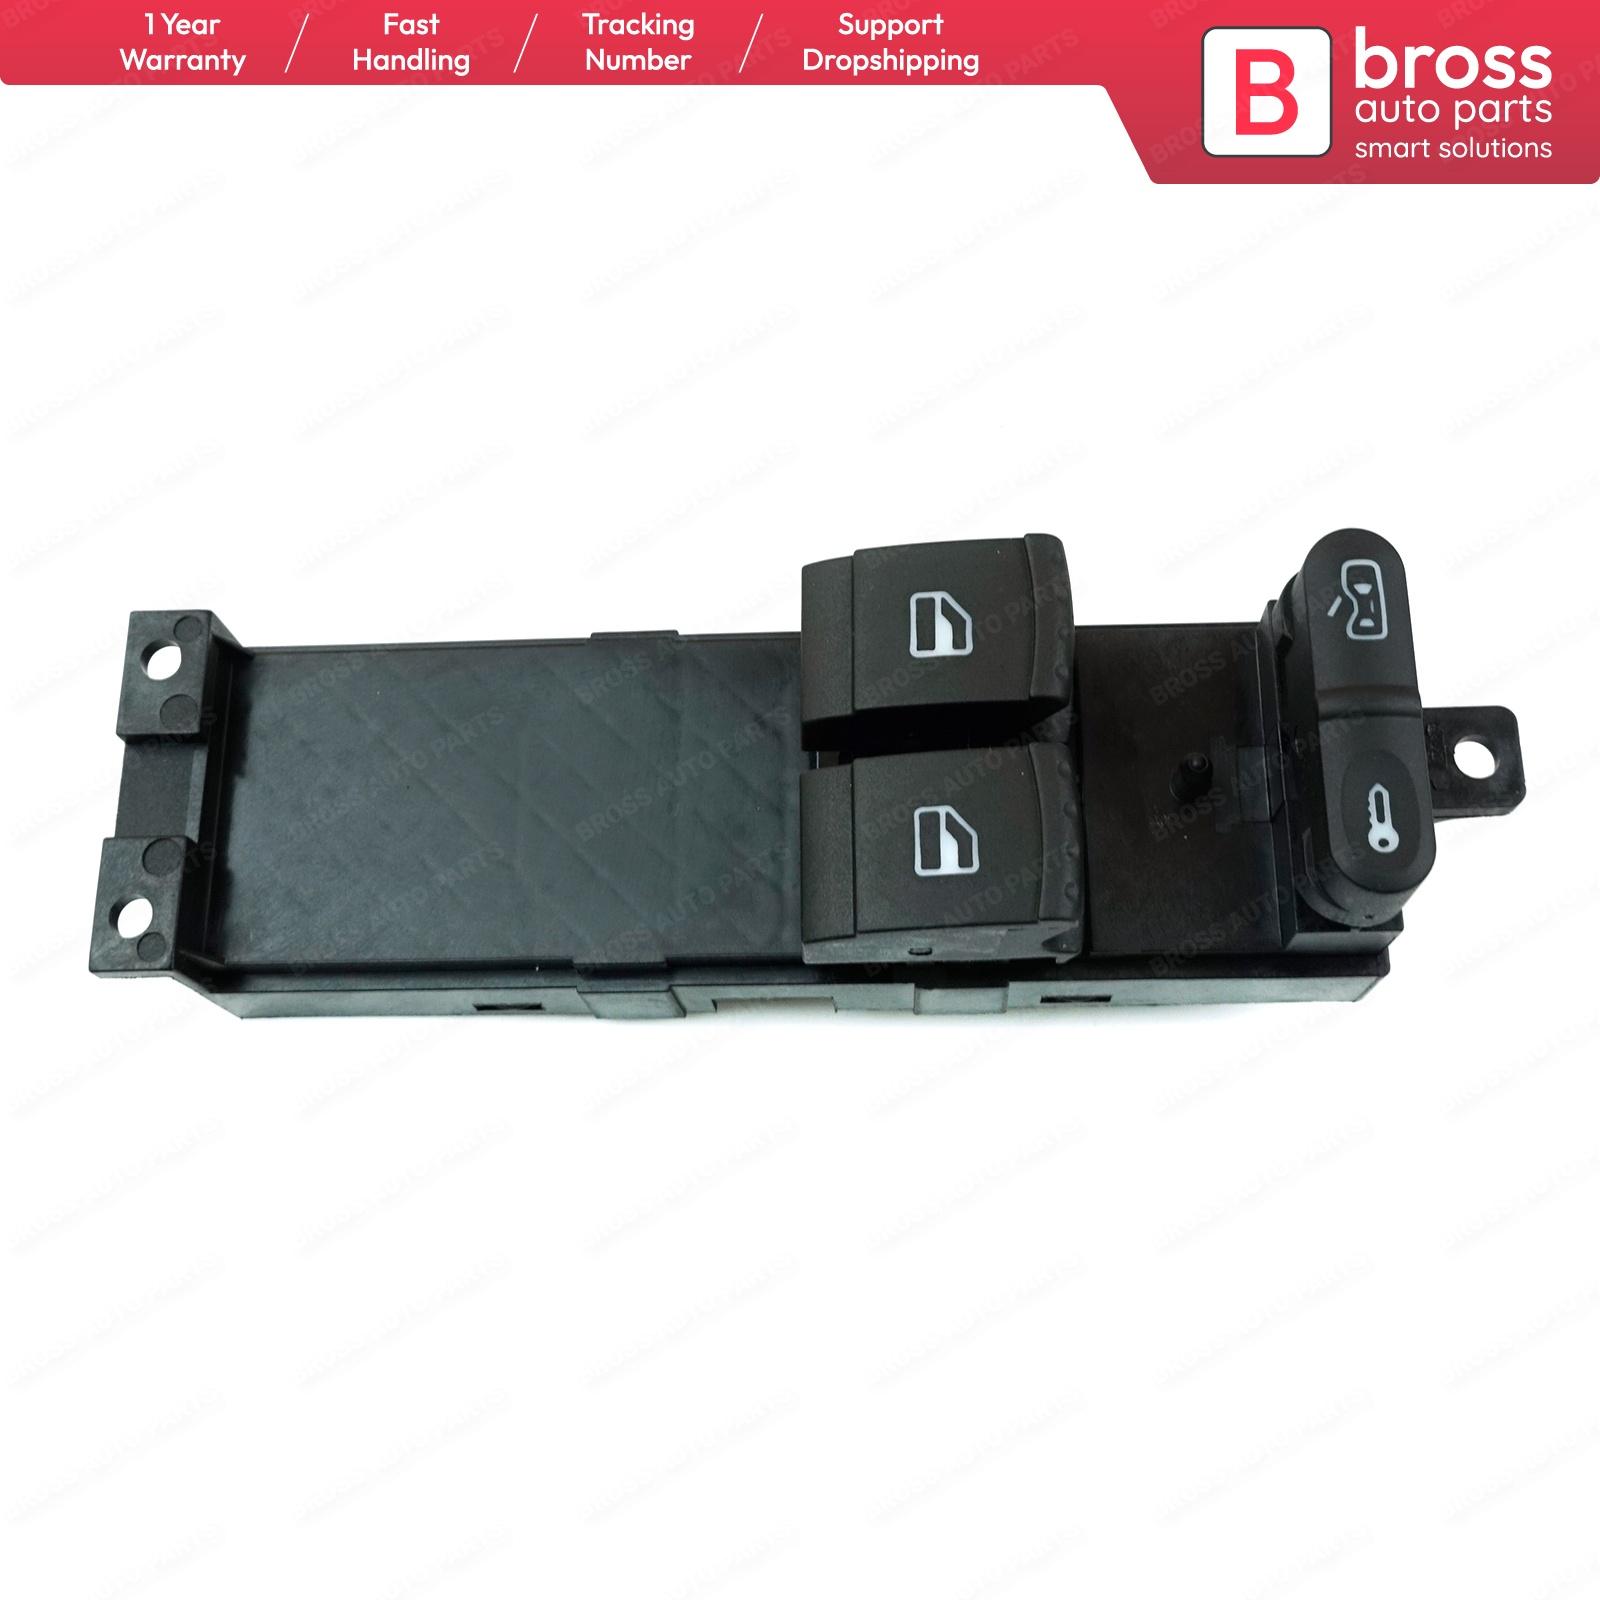 Изображение товара: Главный переключатель передней левой двери Bross BDP117 Power для панели управления окон со стороны водителя для VW:1 J3959857B Seat:1 J4 959 857 D